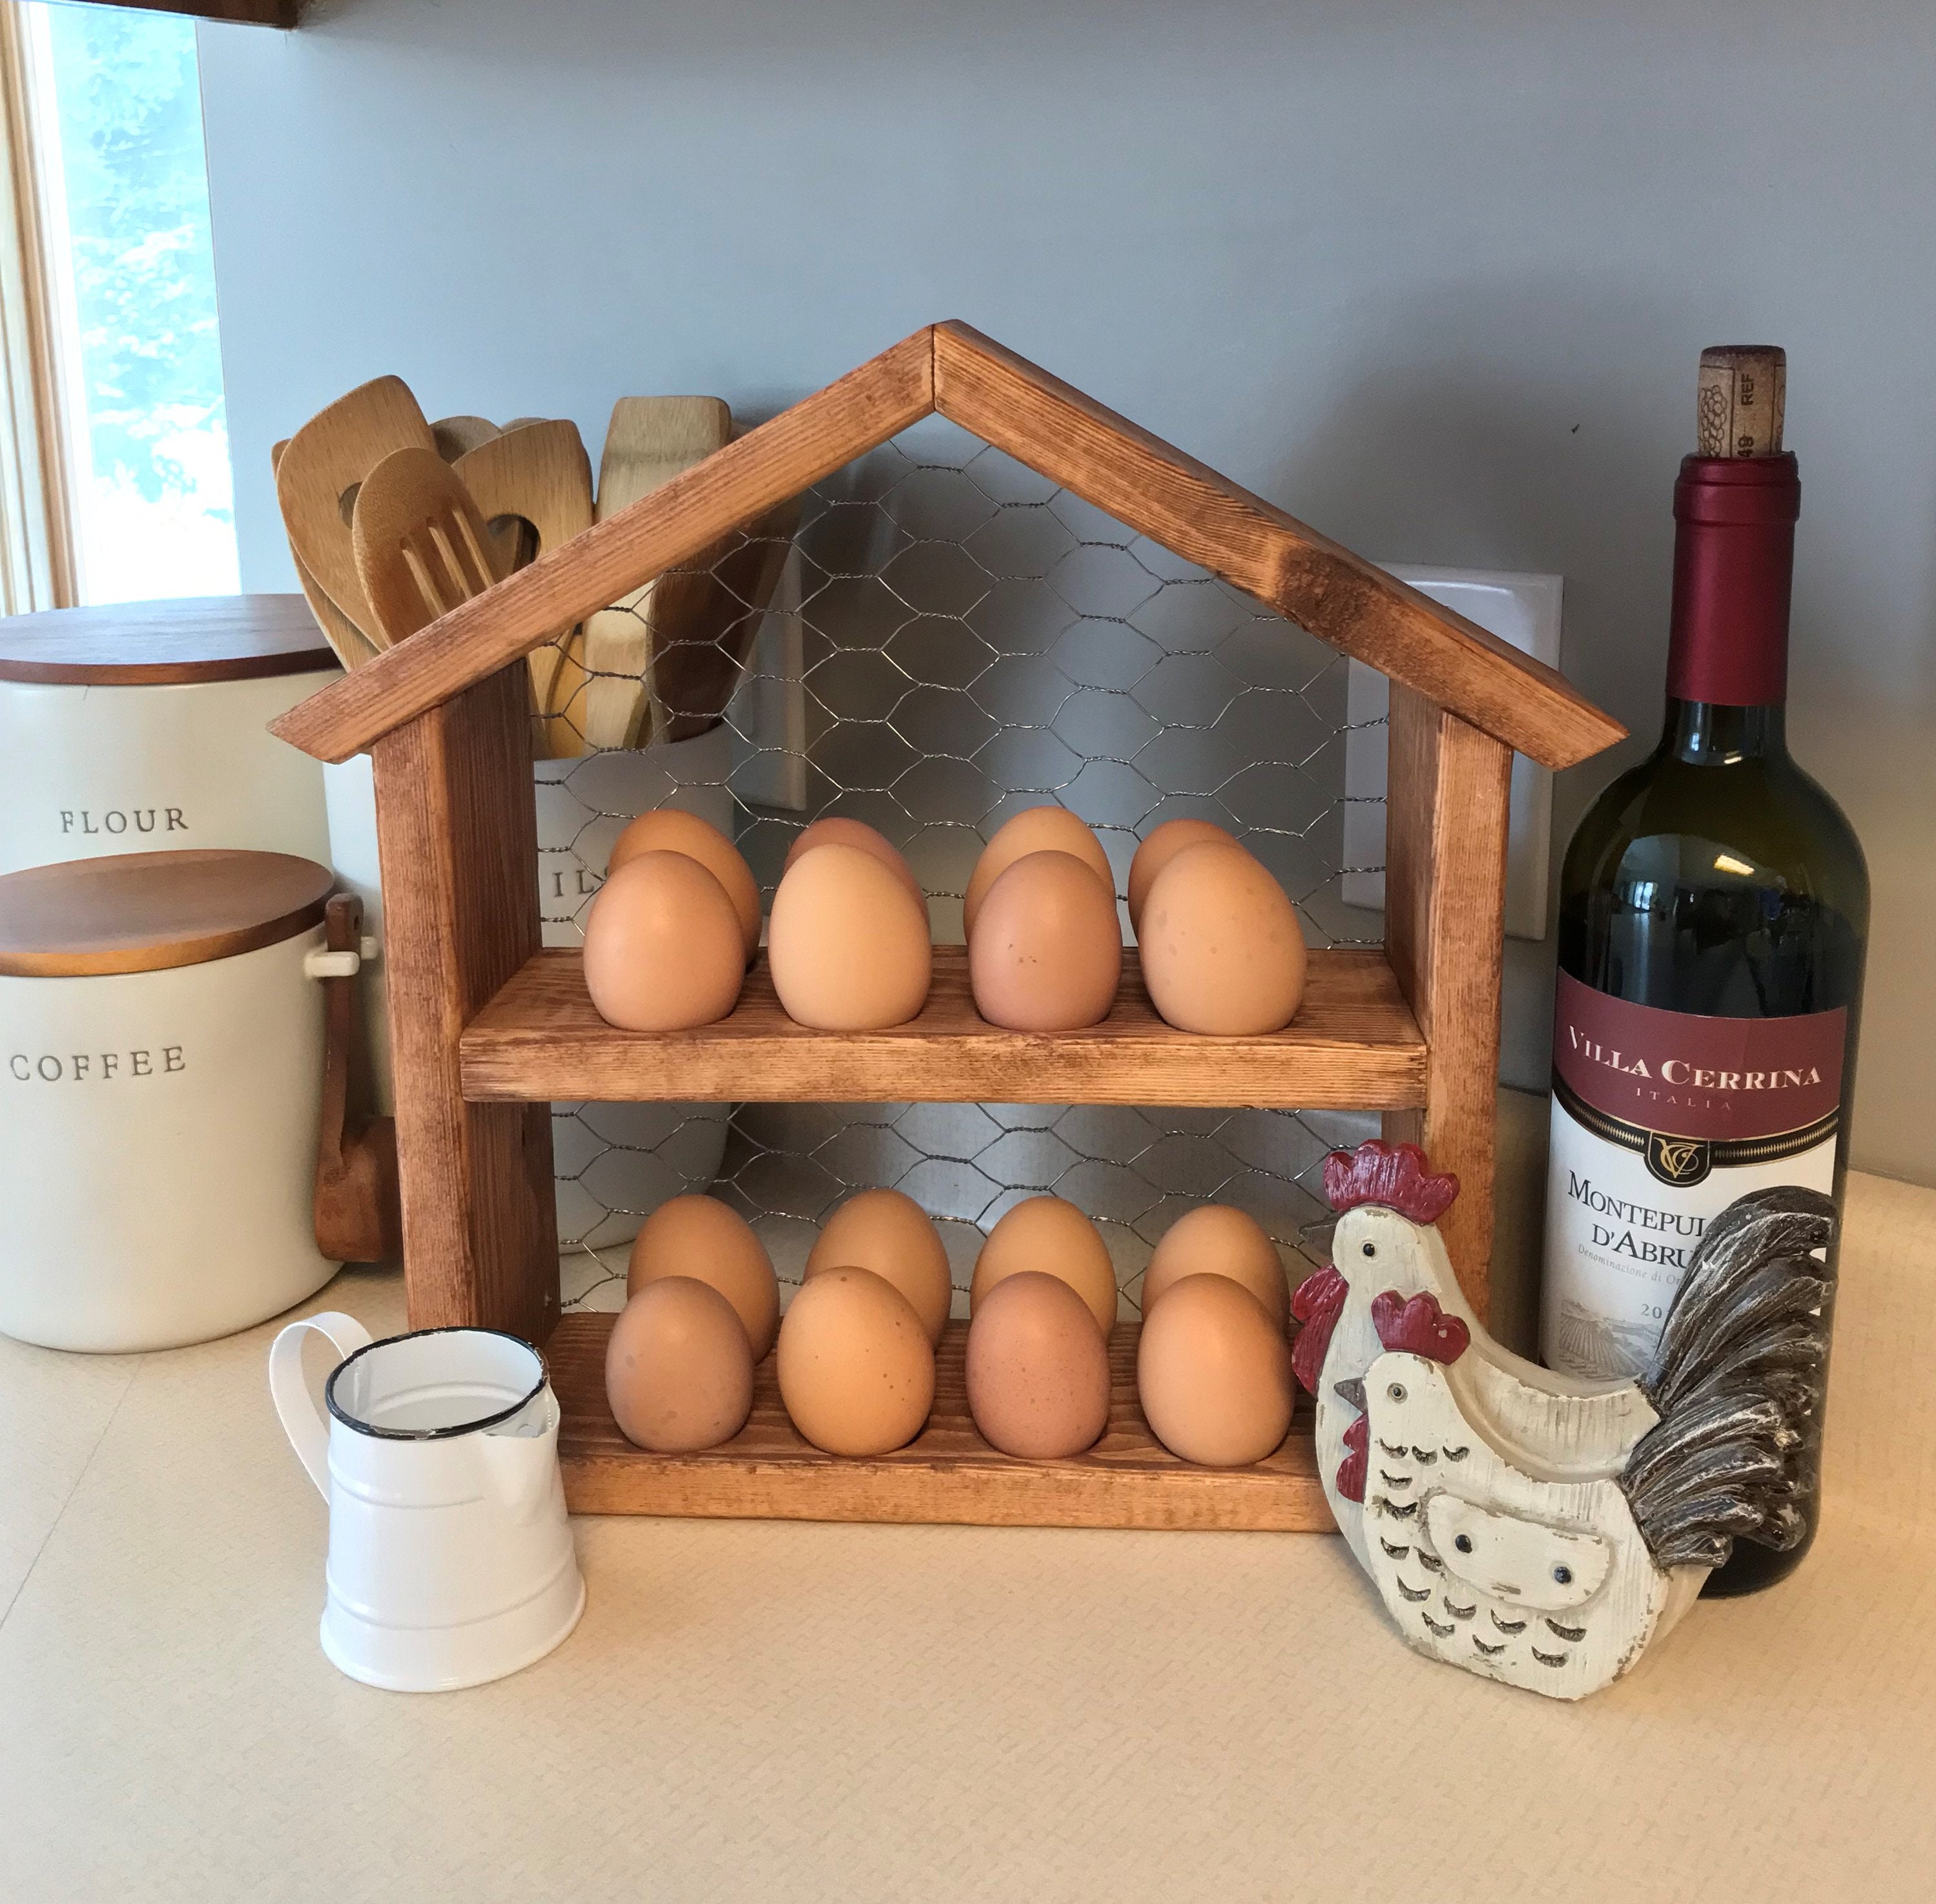 Vigor Egg Holder Countertop Freestanding Wired & Spiral Medium Egg Display Egg Holder for Fresh Eggs - Grey